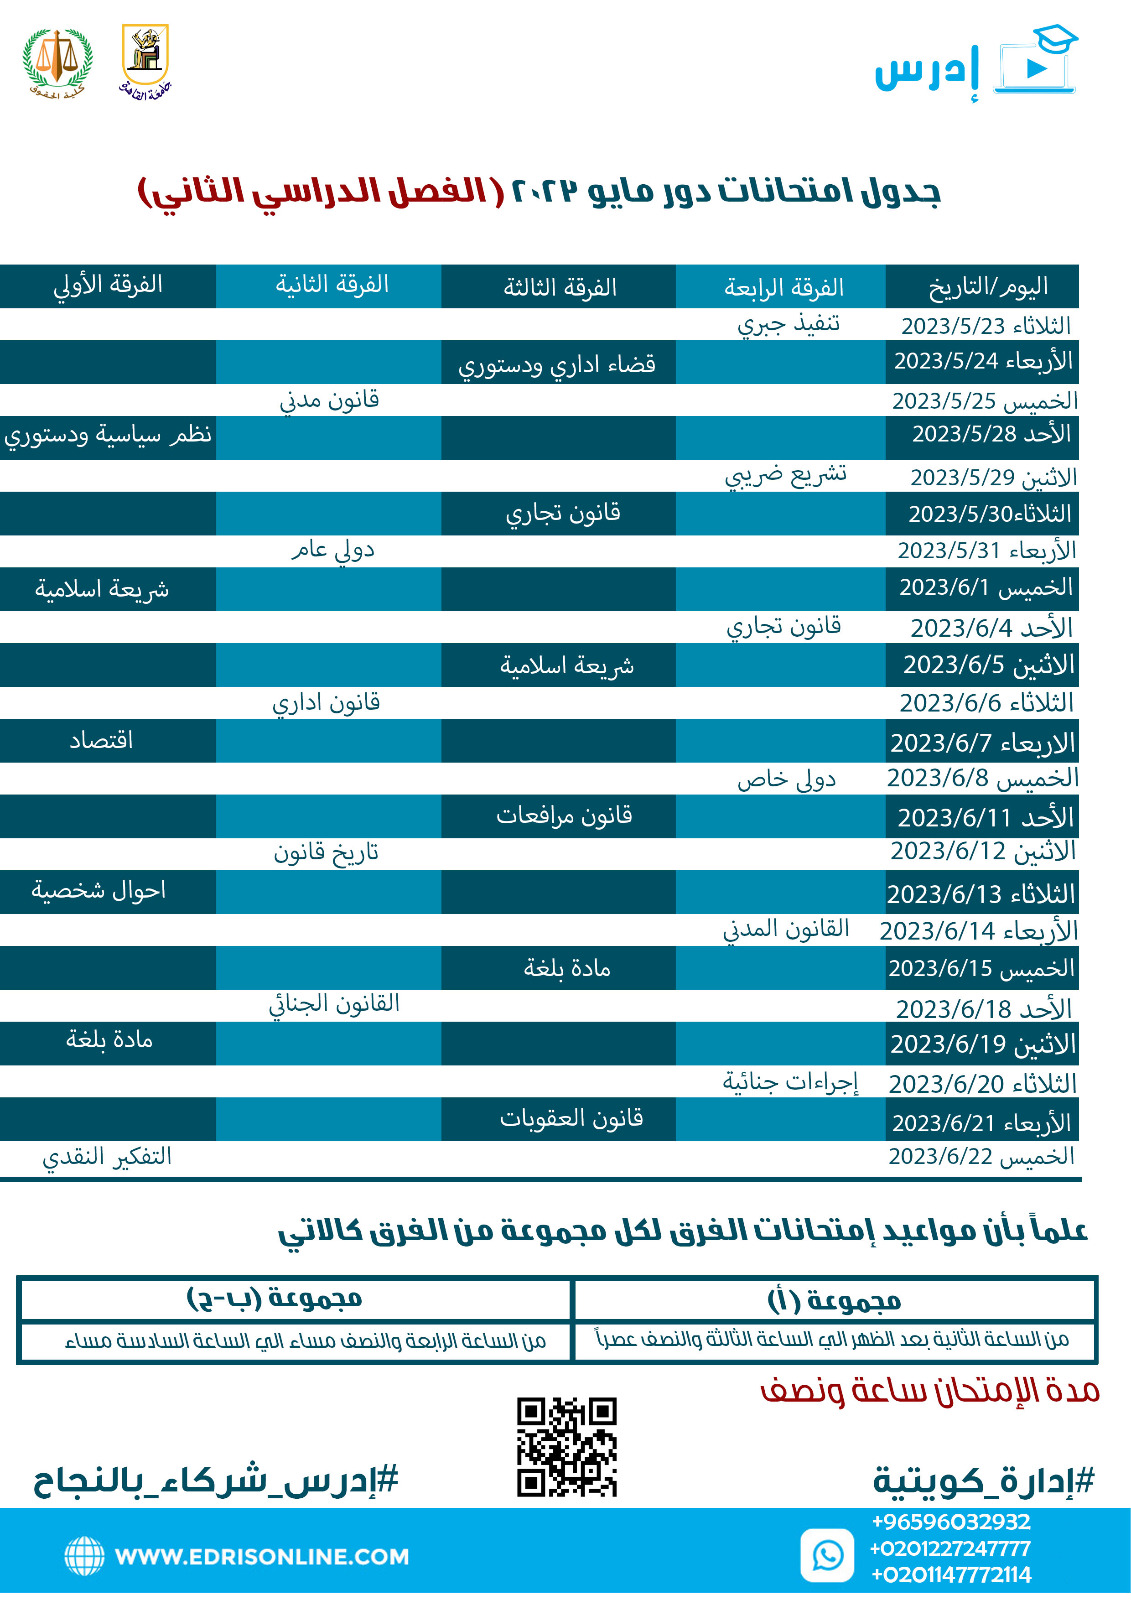 جدول امتحانات الفصل الدراسي الثاني لطلاب كليه الحقوق جامعة القاهرة للعام الدراسي 2023/2022